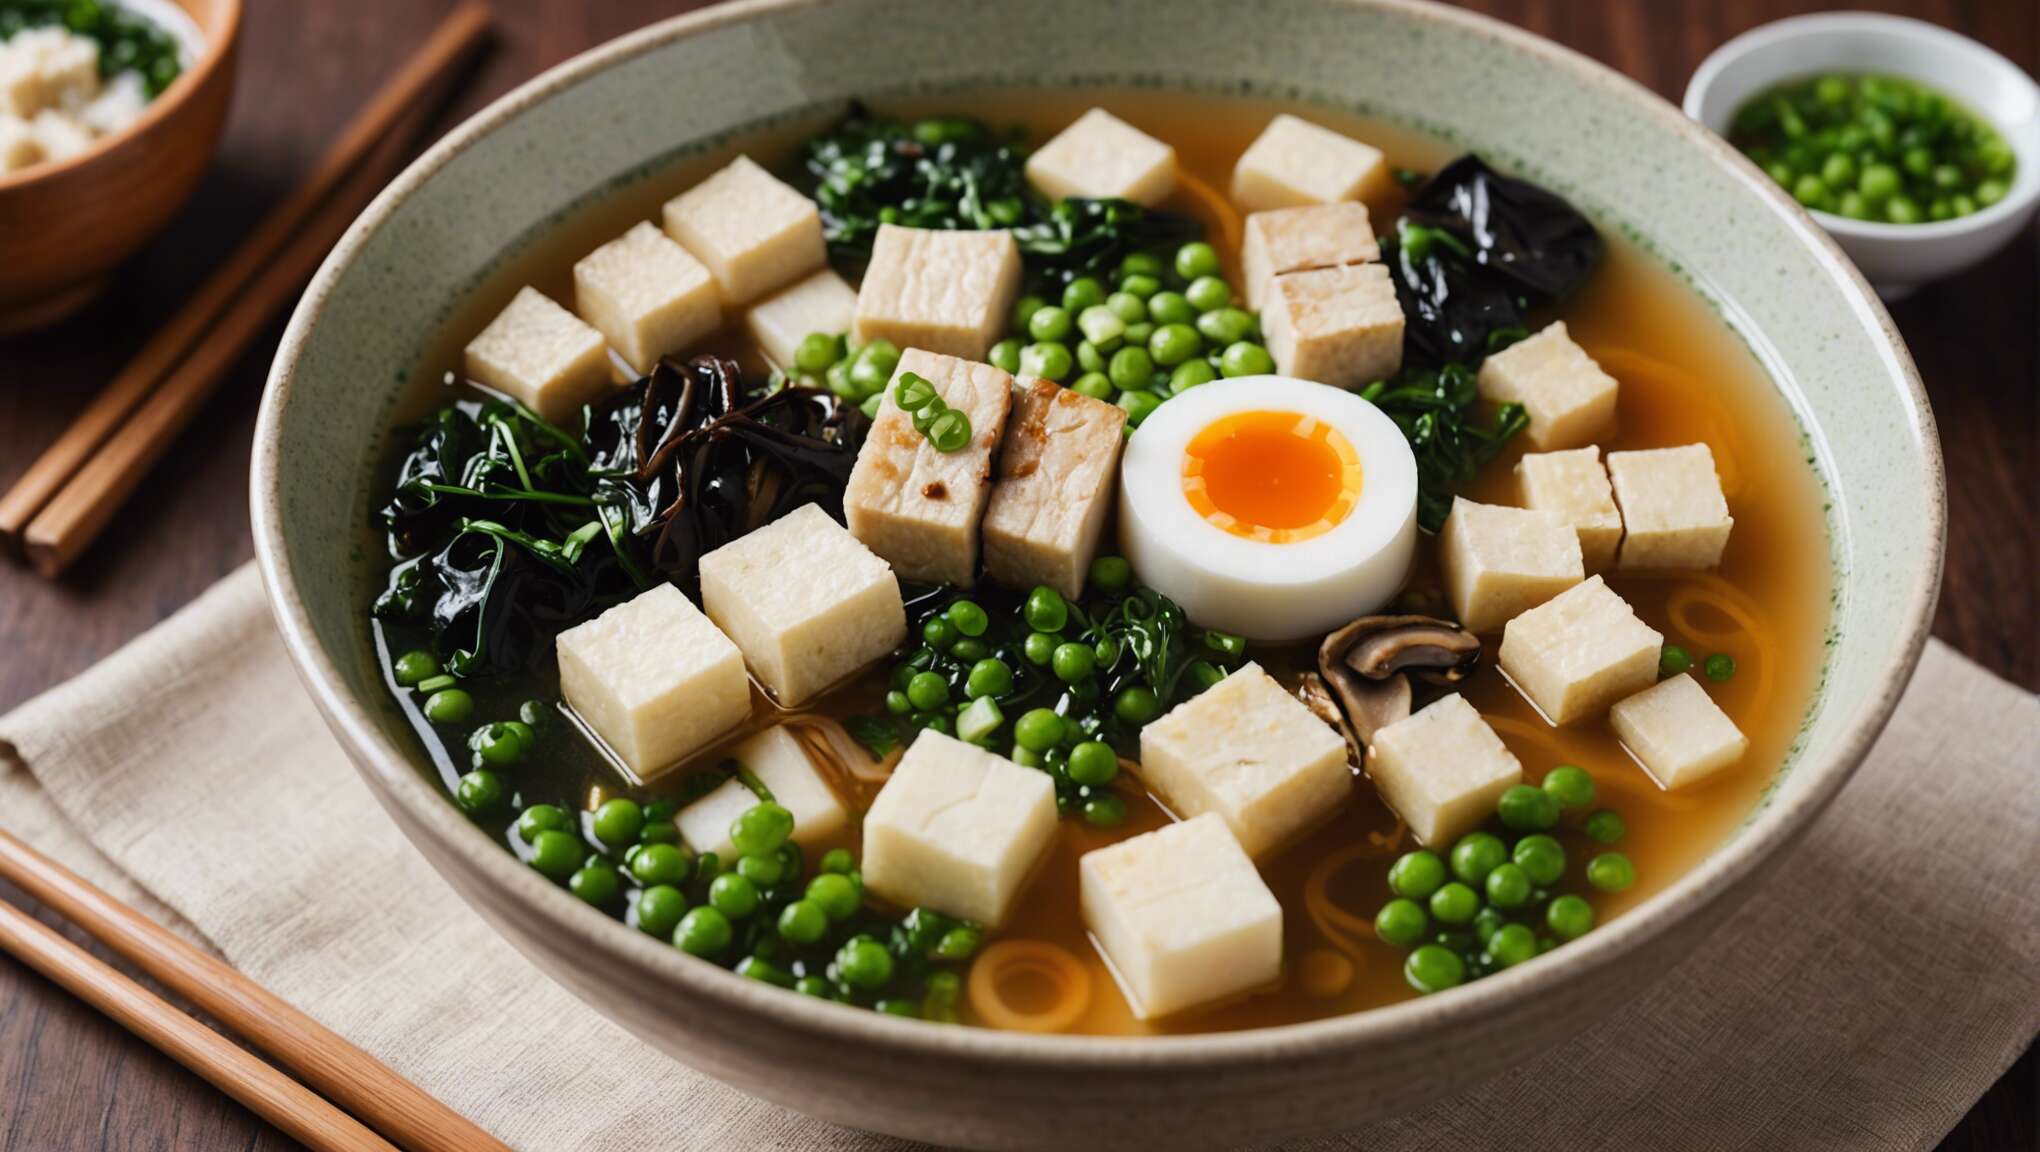 Soupe miso traditionnelle : ingrédients essentiels pour l'authenticité